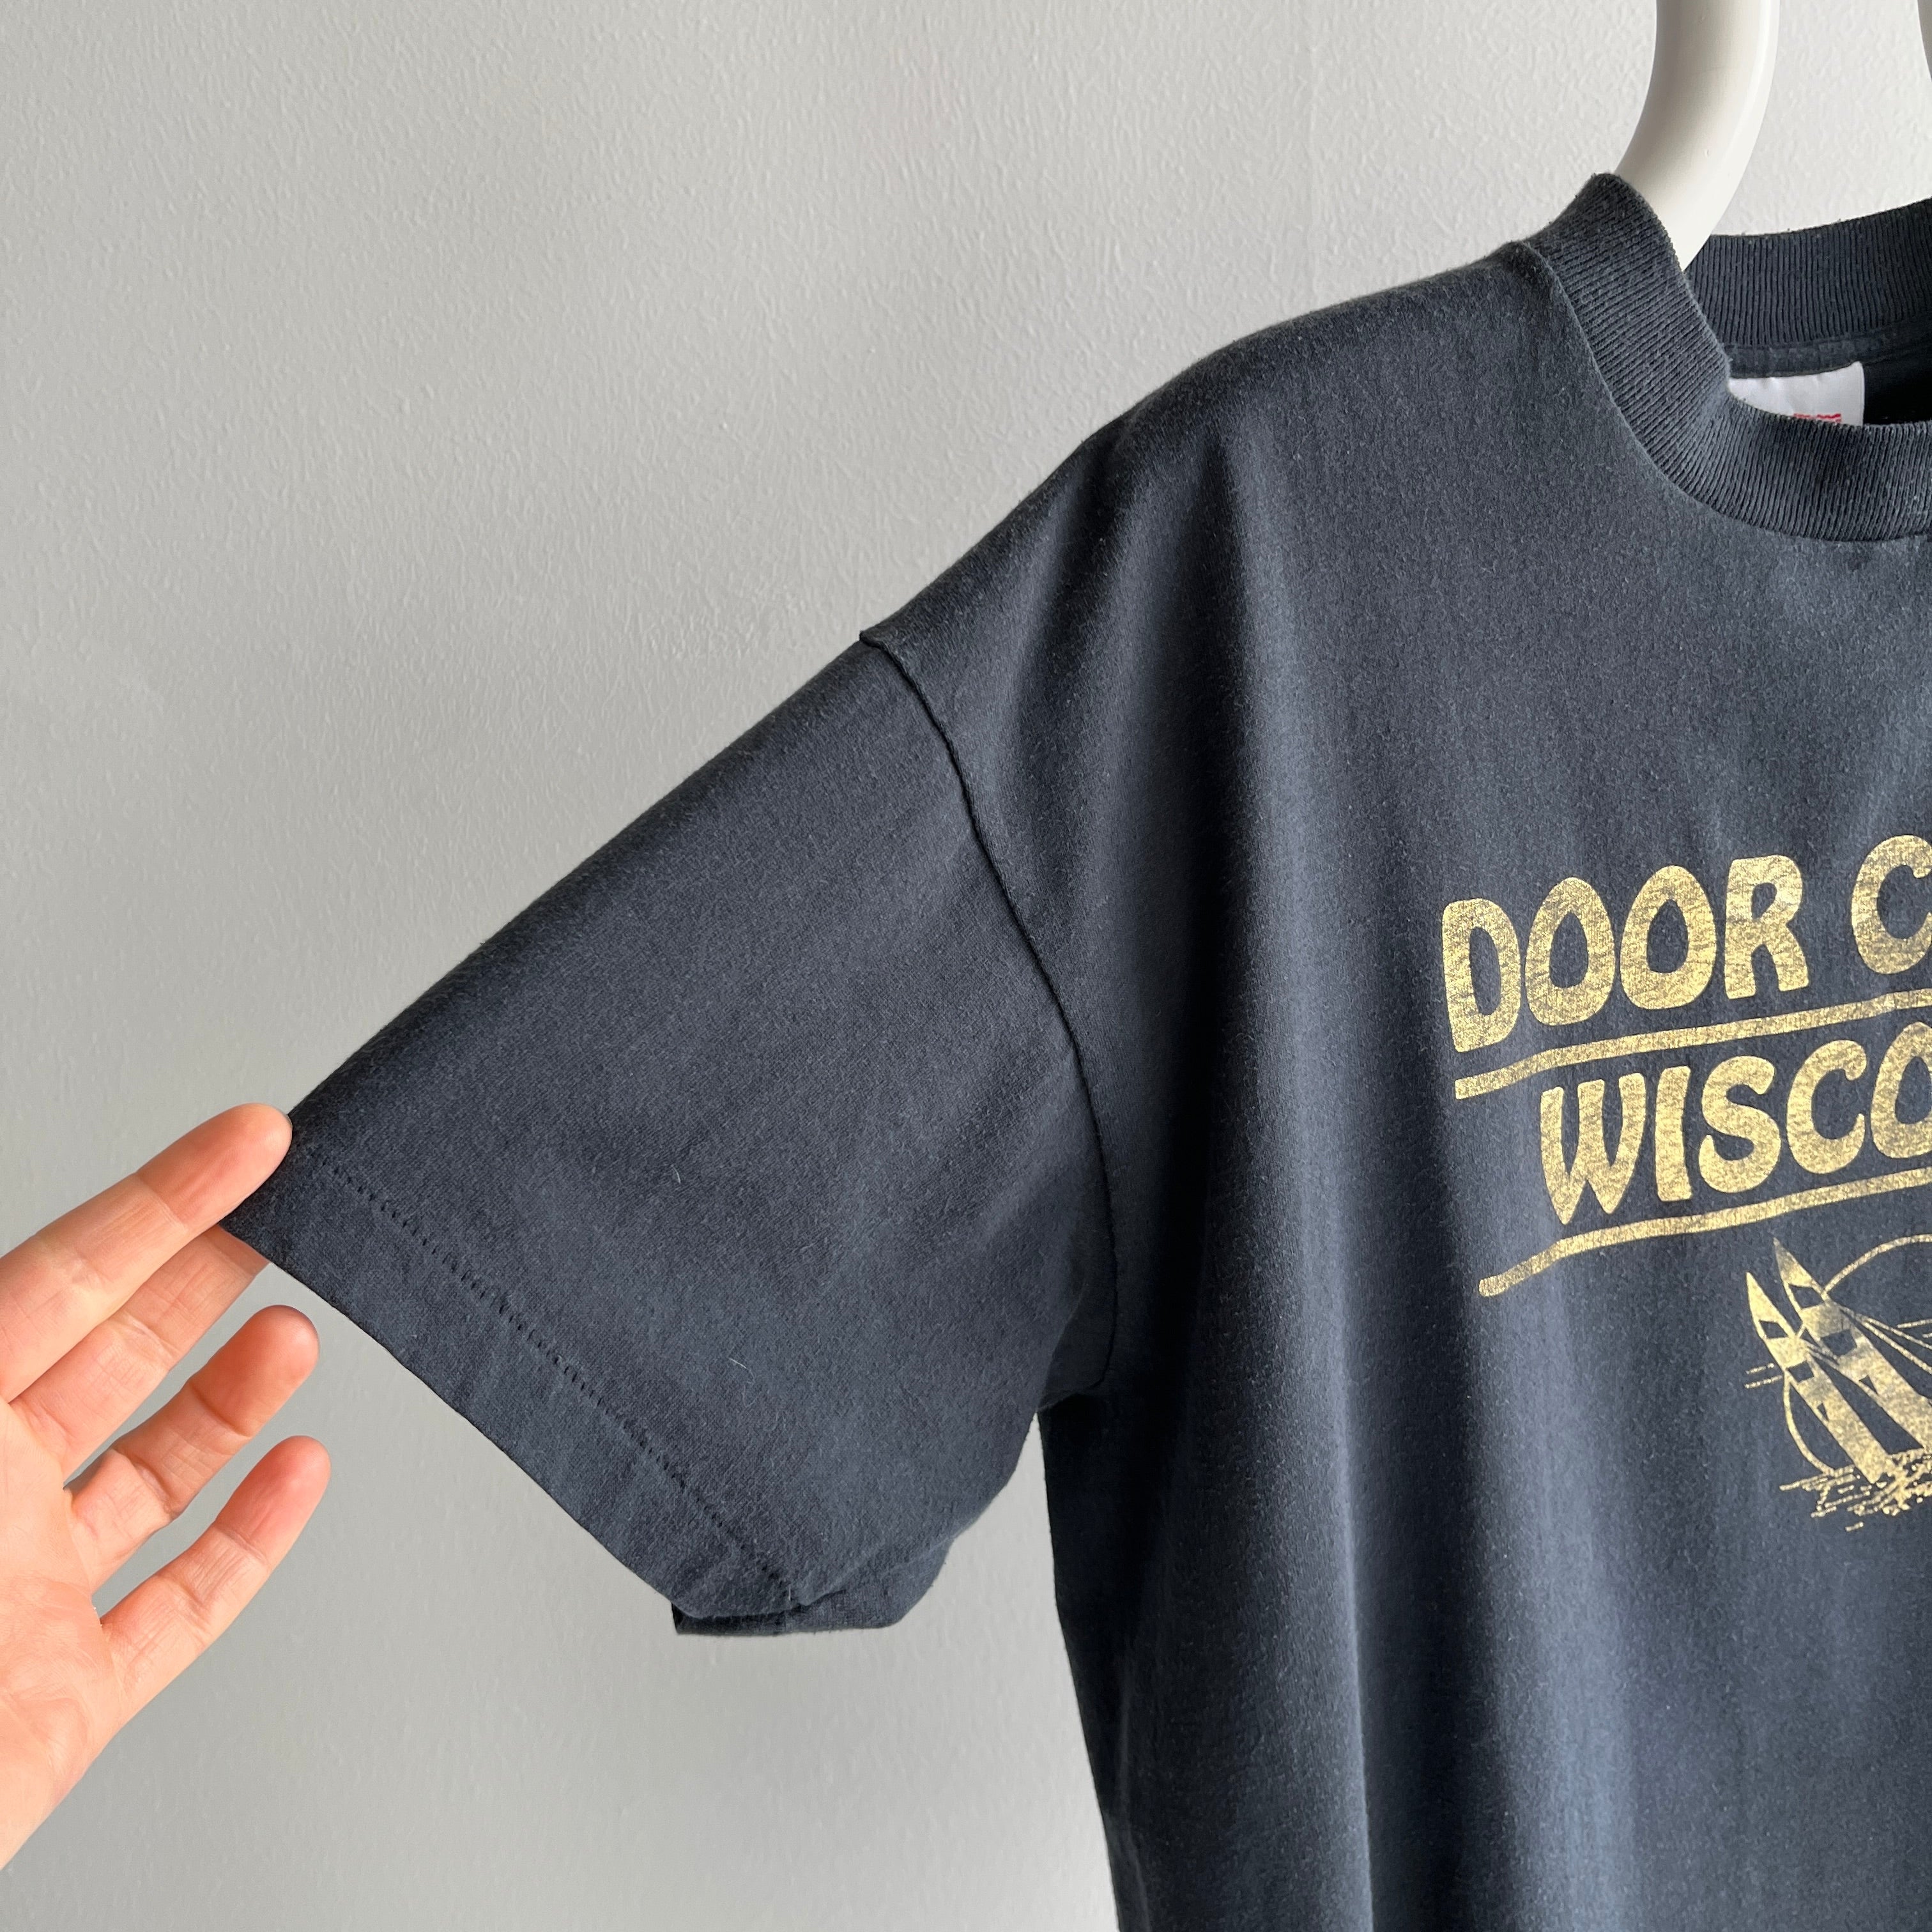 1990s Door County, Wisconsin Faded Metallic T-Shirt